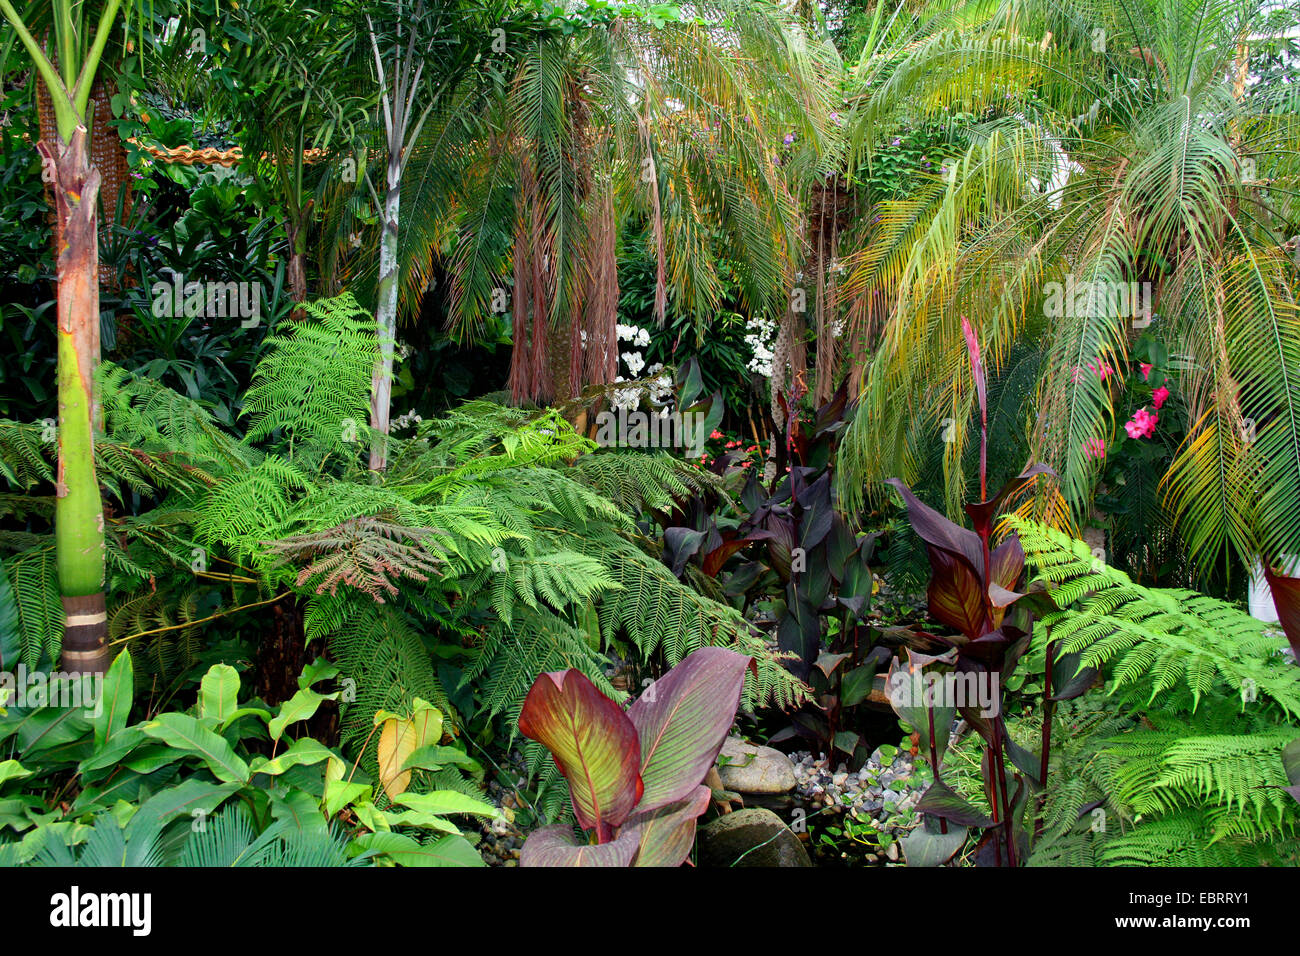 Plante tropicale dans une serre tropicale avec des fougères arborescentes, palmferns, et palmiers Banque D'Images